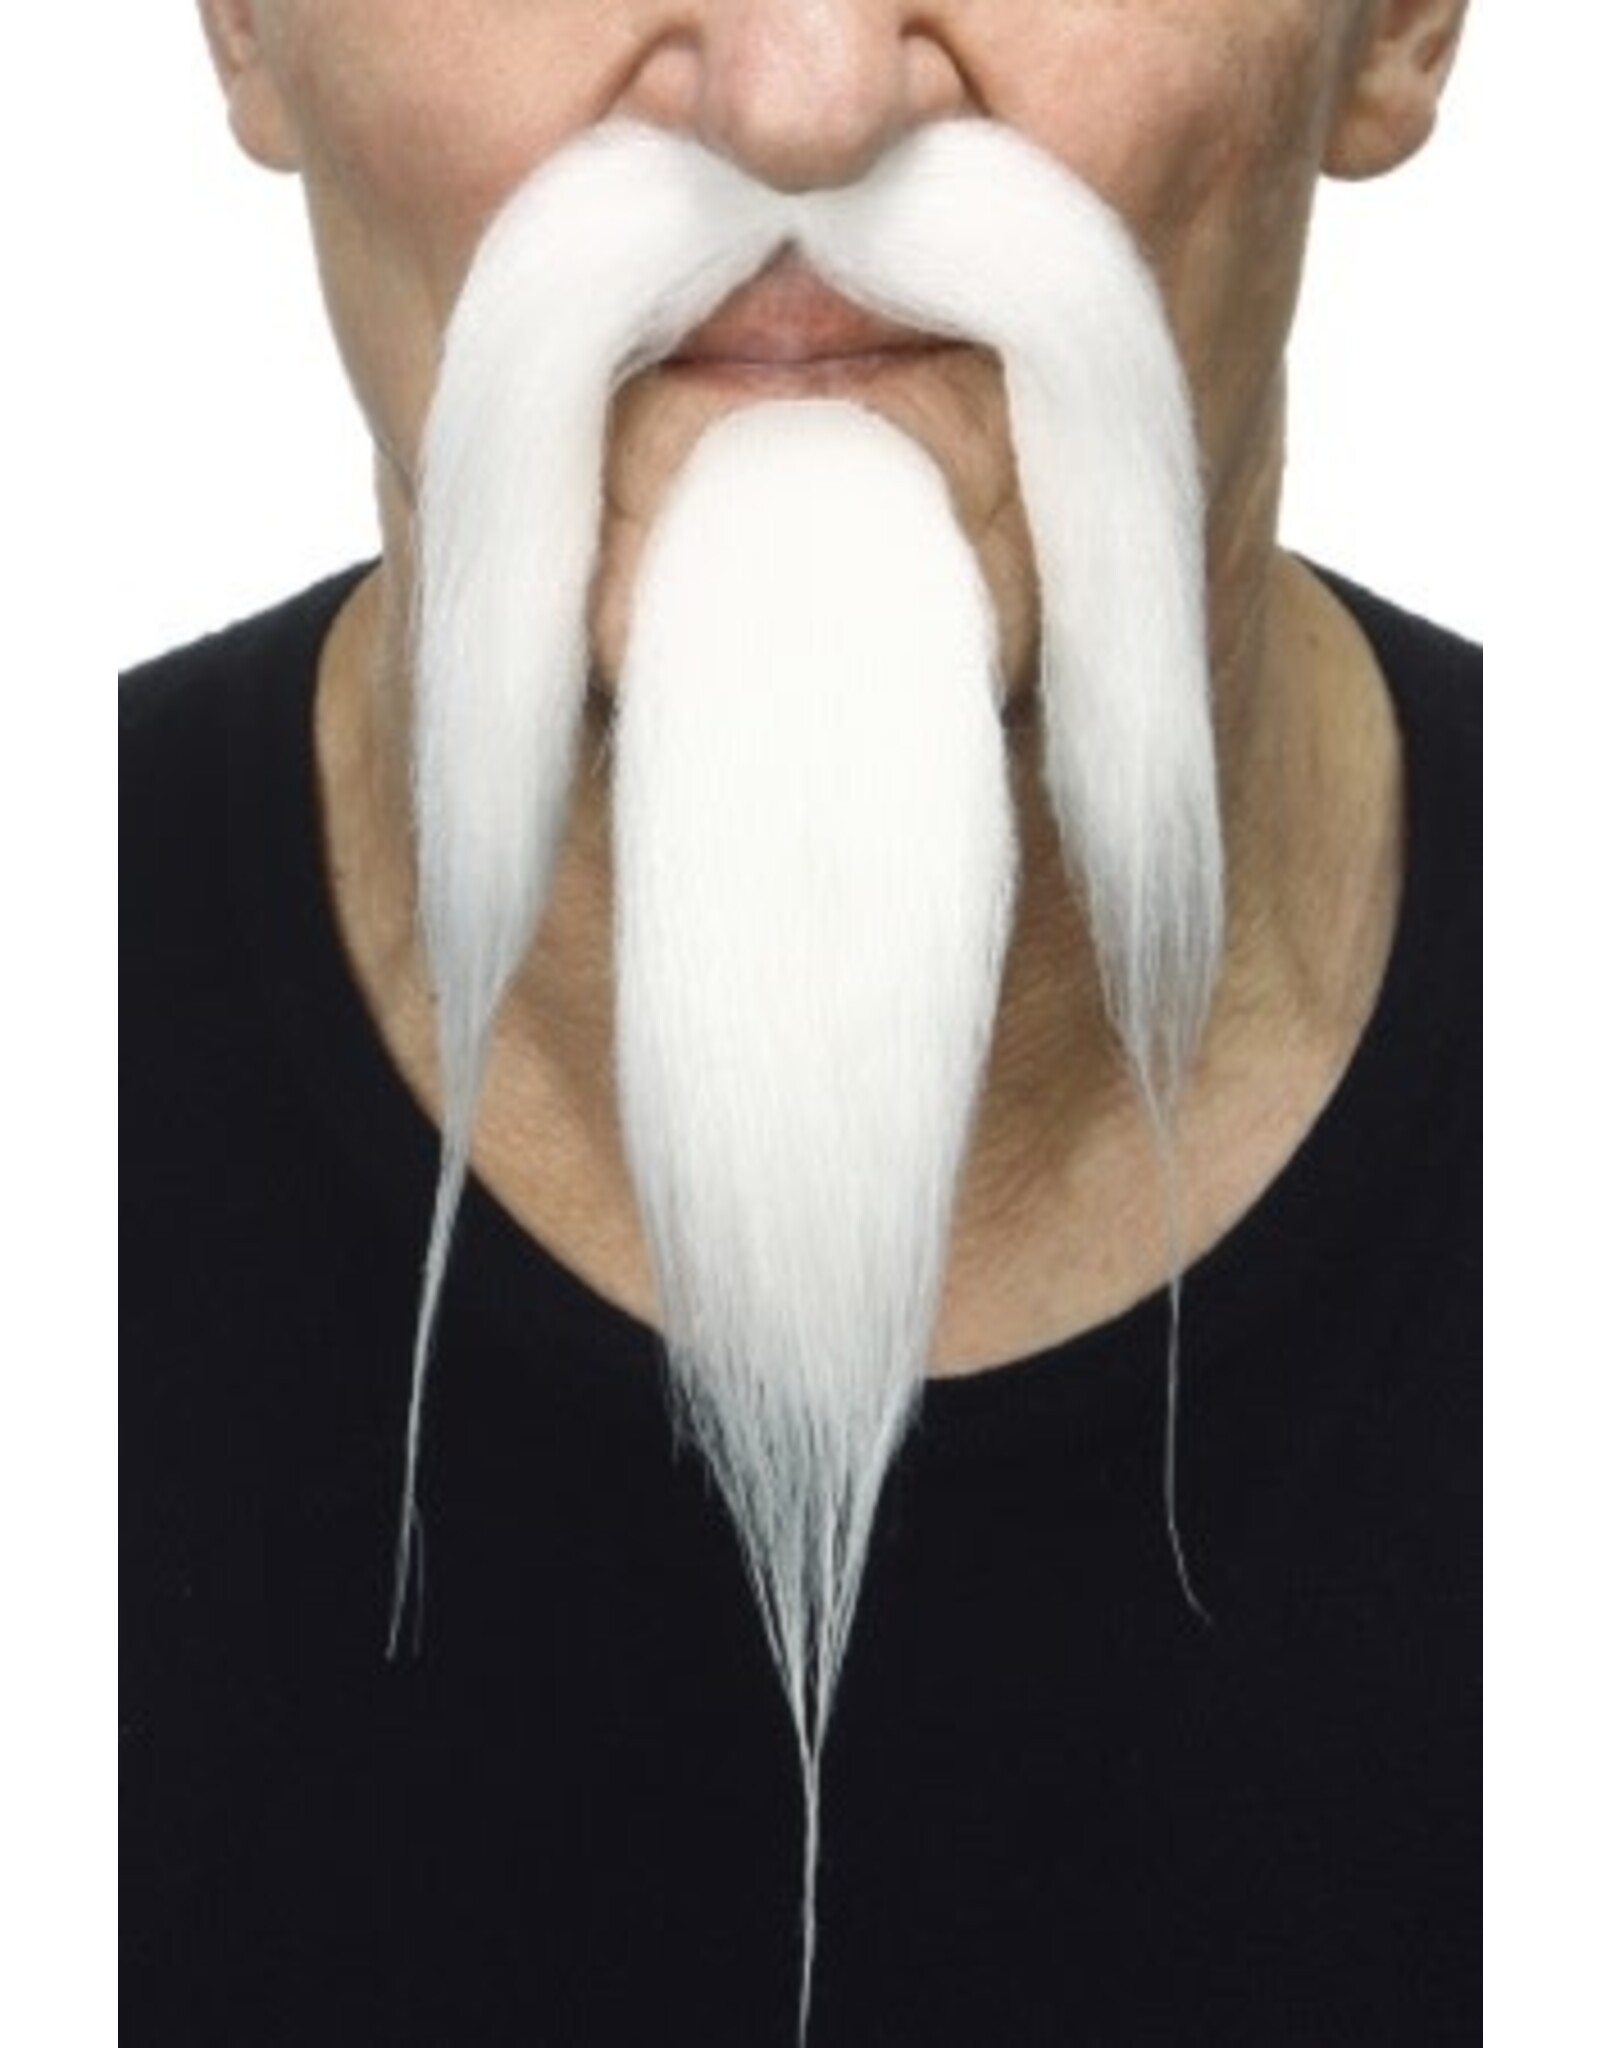 European Moustaches Chinese White Beard Set